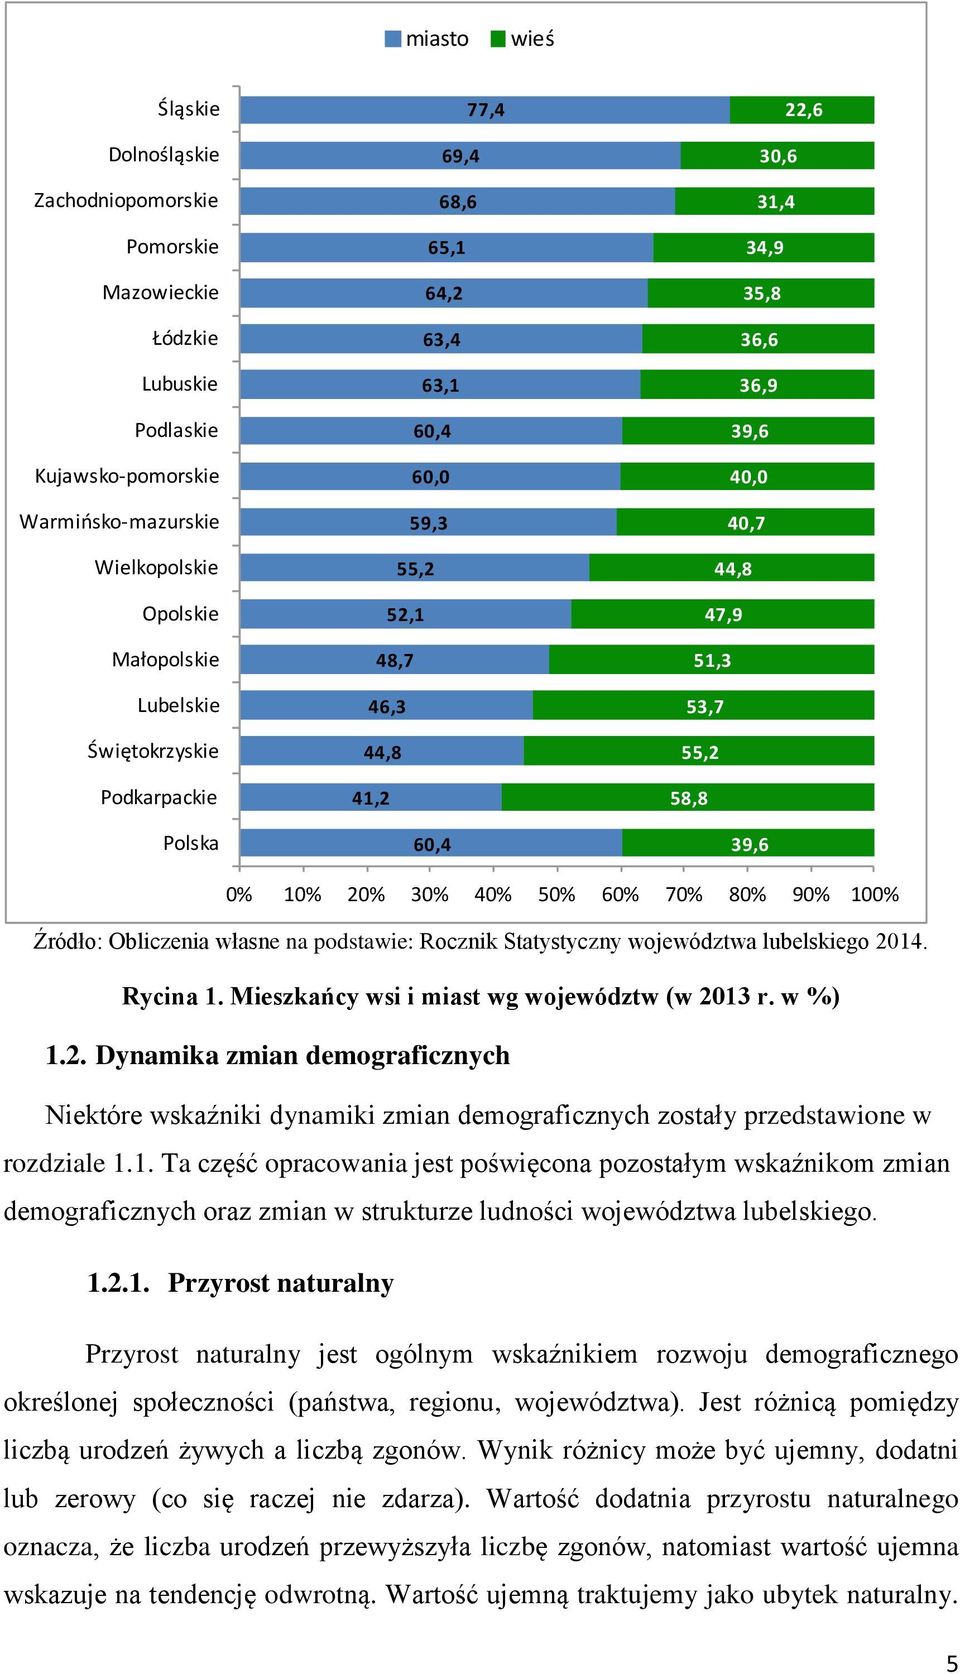 20% 30% 40% 50% 60% 70% 80% 90% 100% Źródło: Obliczenia własne na podstawie: Rocznik Statystyczny województwa lubelskiego 2014. Rycina 1. Mieszkańcy wsi i miast wg województw (w 2013 r. w %) 1.2. Dynamika zmian demograficznych Niektóre wskaźniki dynamiki zmian demograficznych zostały przedstawione w rozdziale 1.